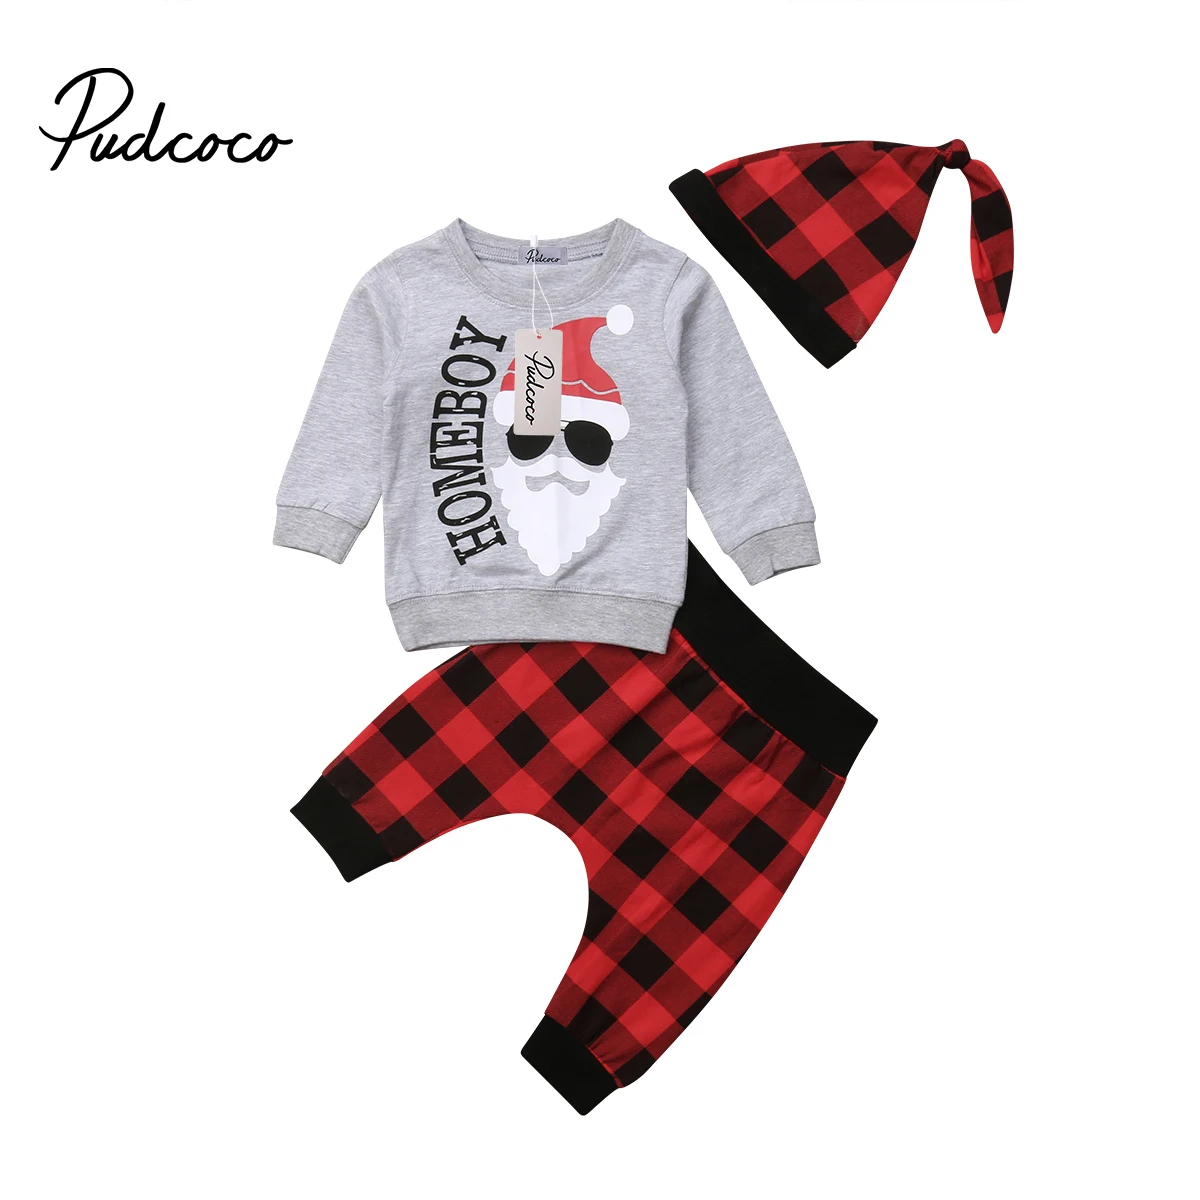 Pudcoco/Одежда для новорожденных мальчиков, Рождественский комплект из 3 предметов для мальчиков 0-18 месяцев, футболка/худи+ длинные штаны в клетку+ клетчатая шапка - Цвет: Long Sleeve Set